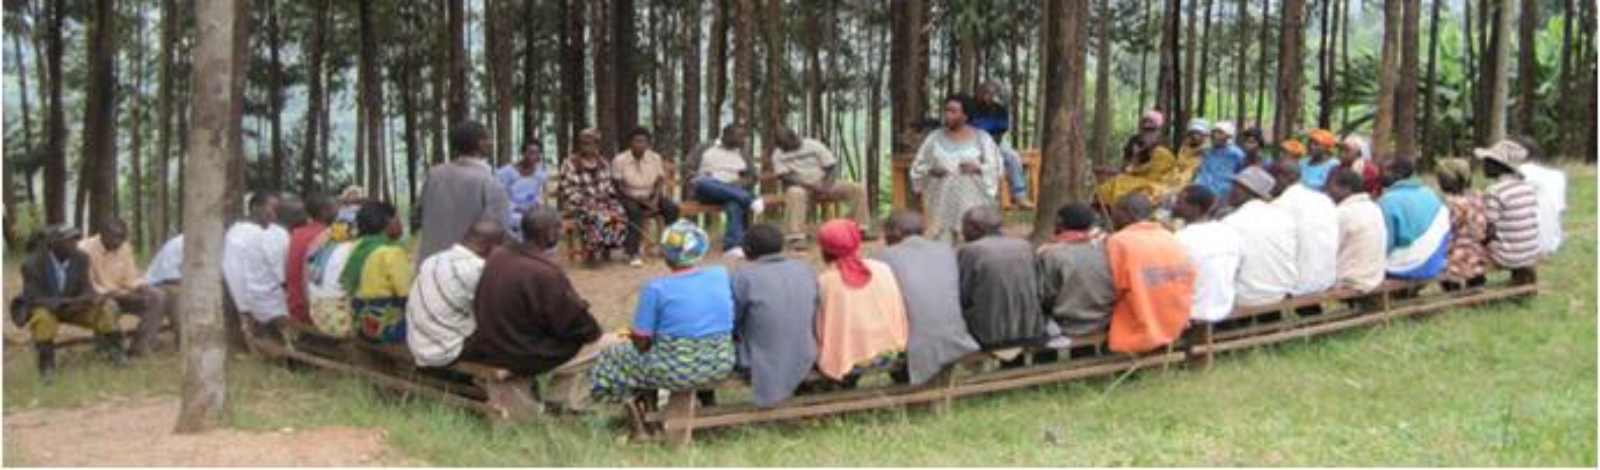 séance de thérapie sociale animée par Médiatrice avec les survivants et ex-prisonniers du génocide - AMI - Rwanda